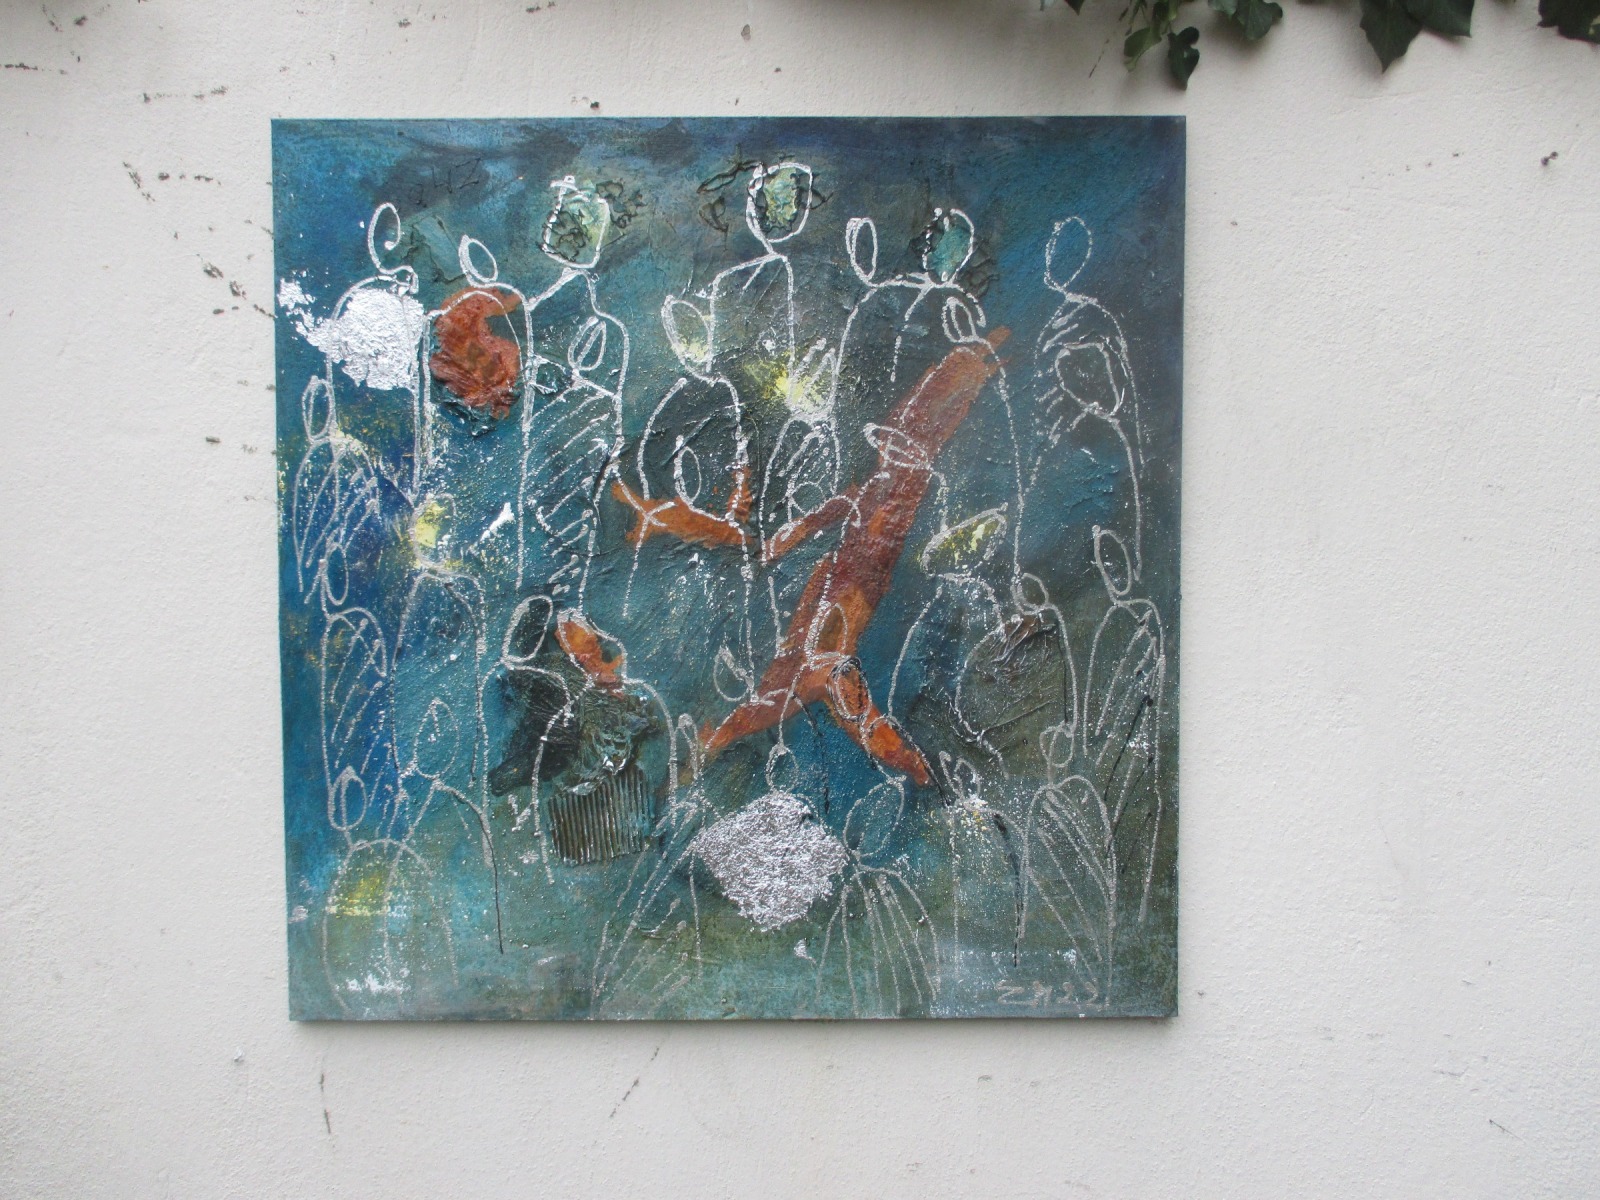 abstrakte Menschen in rost 100x100 cm Ölmalerei Collage expressive Malerei blau 2